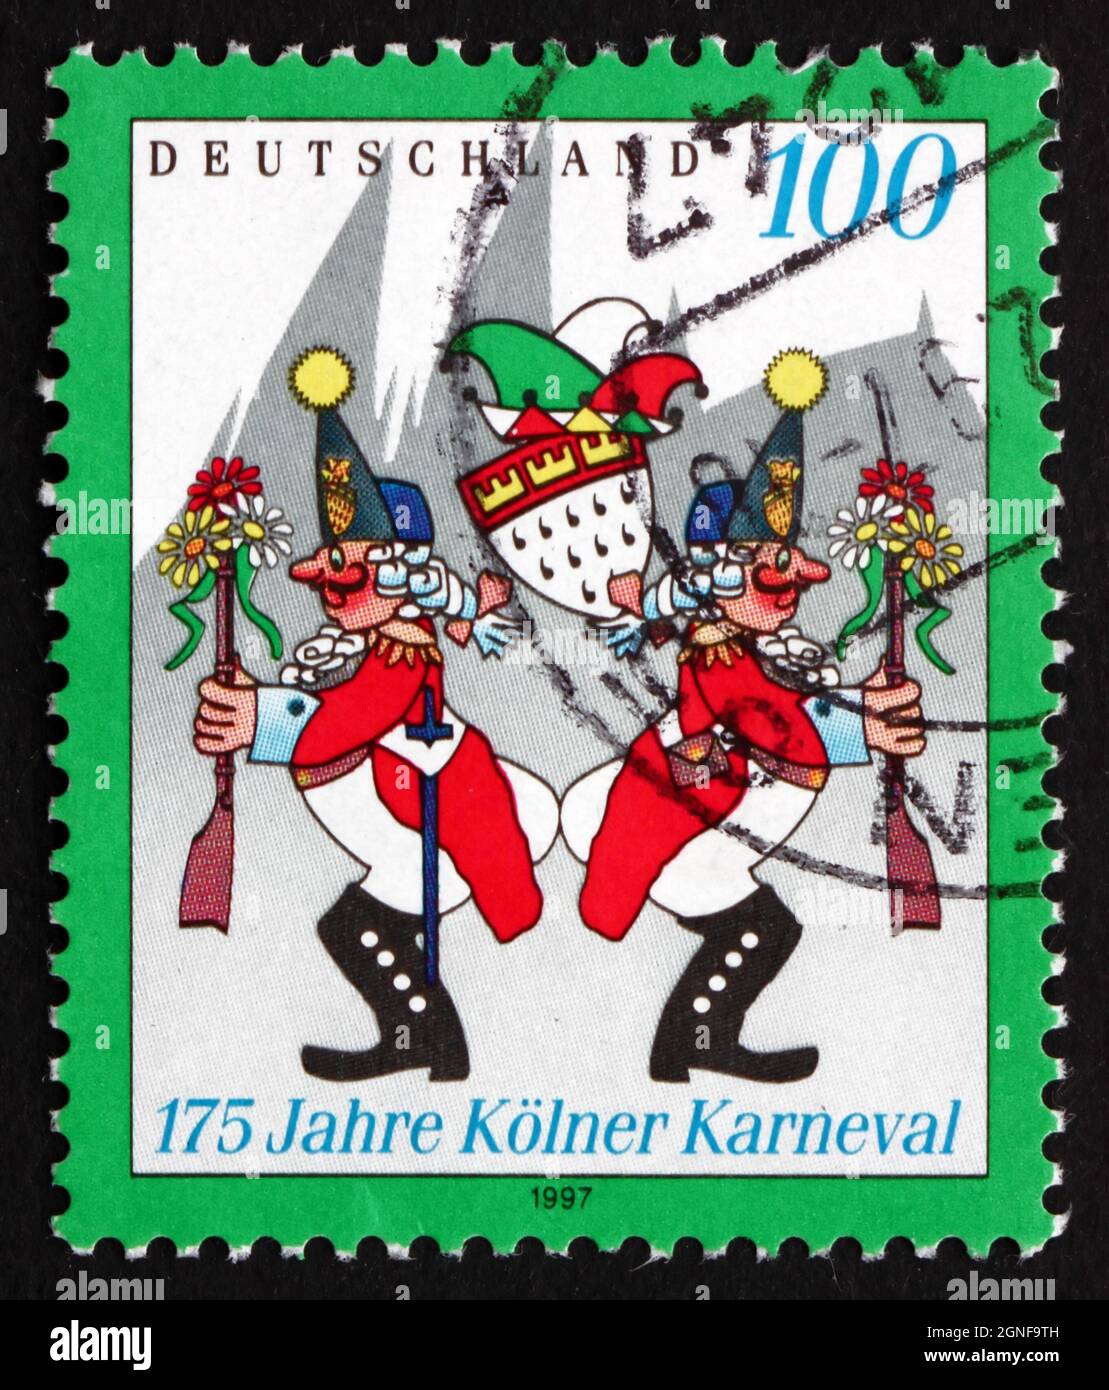 DEUTSCHLAND - UM 1997: Eine in Deutschland gedruckte Briefmarke zeigt den Kölner Karneval, 175. Jahrestag, um 1997 Stockfoto